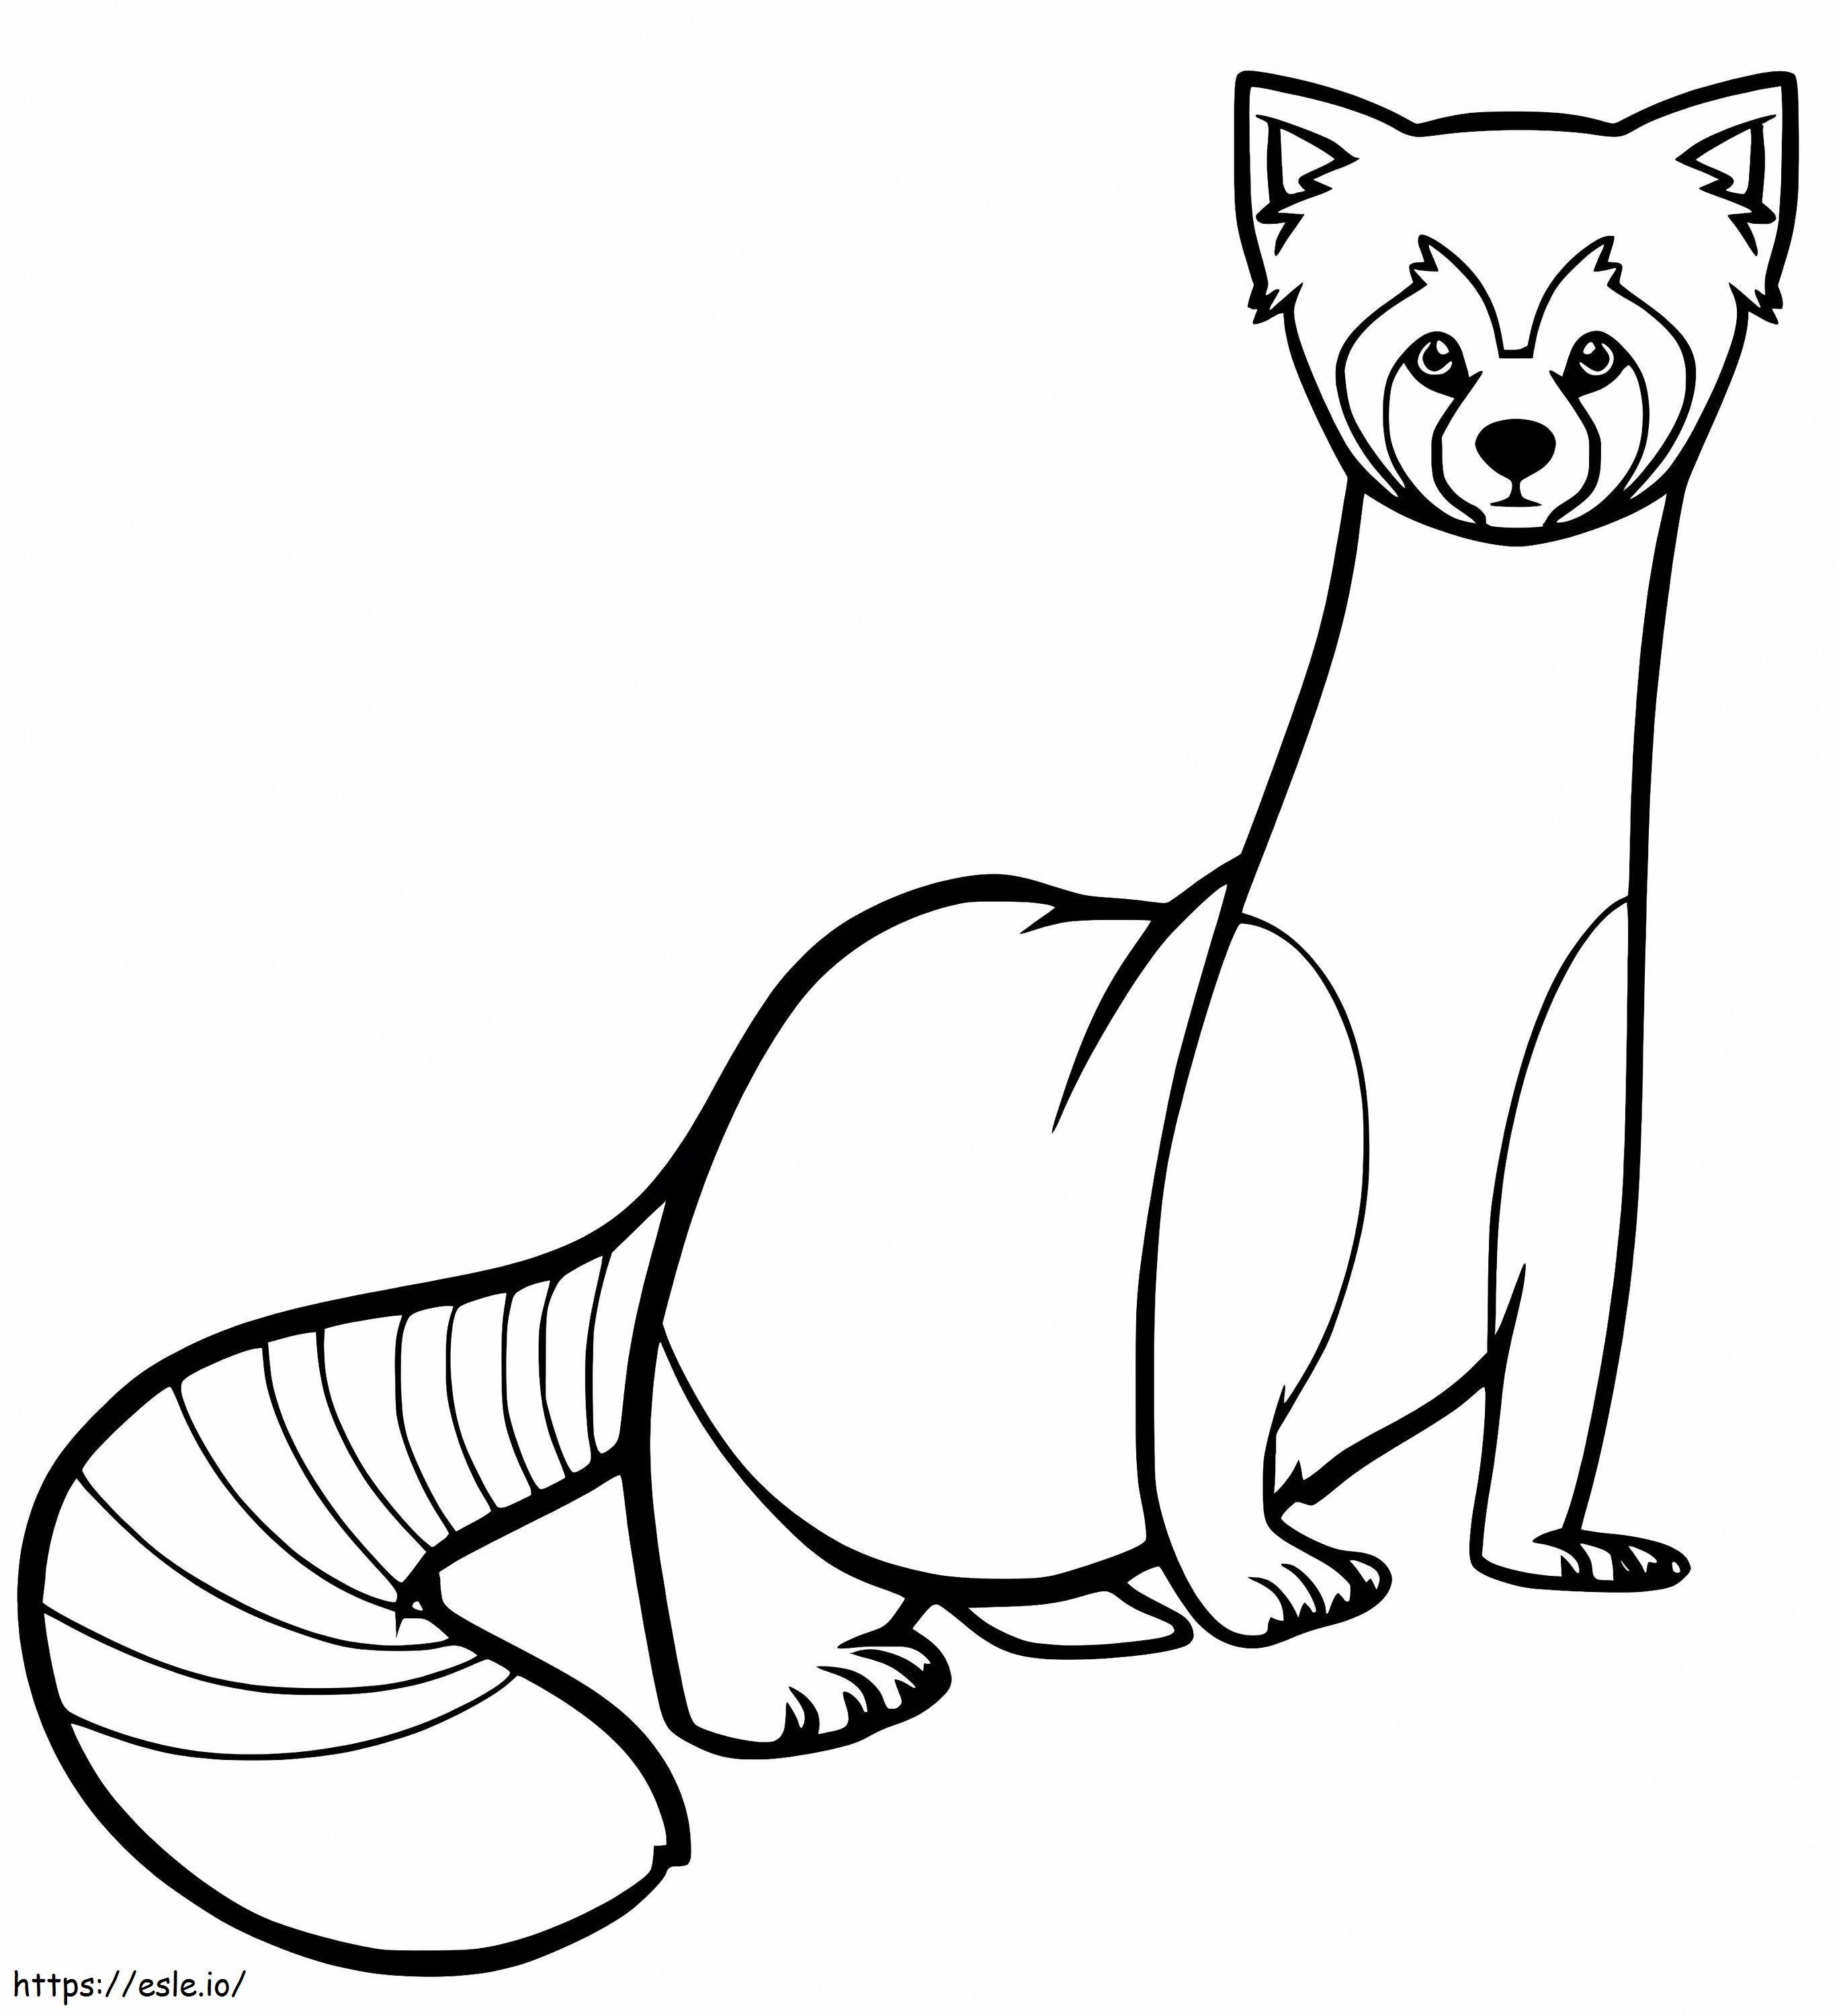 Coloriage Panda roux 7 à imprimer dessin